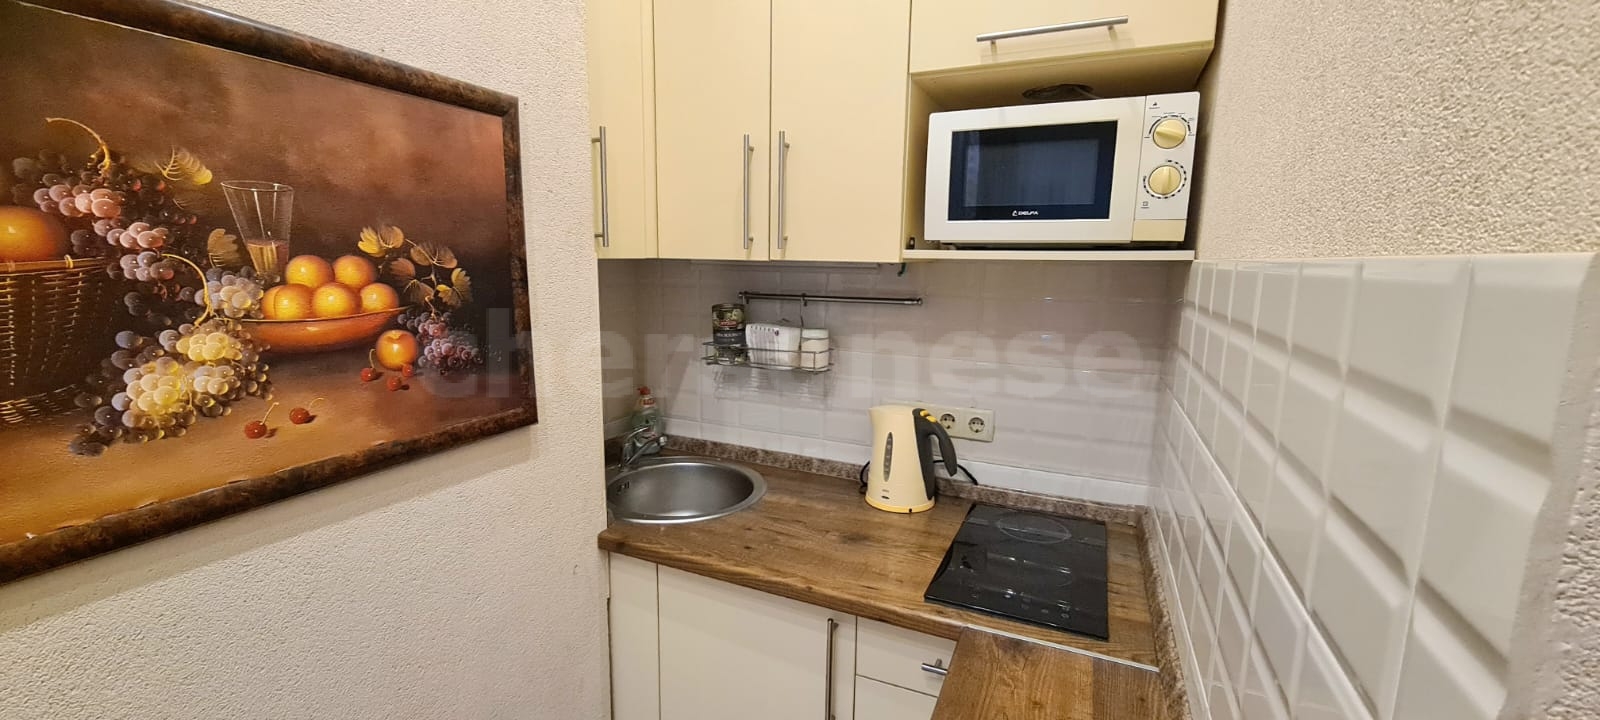 Продажа 2-комнатной квартиры, Севастополь, Адмирала Фадеева улица,  д.48